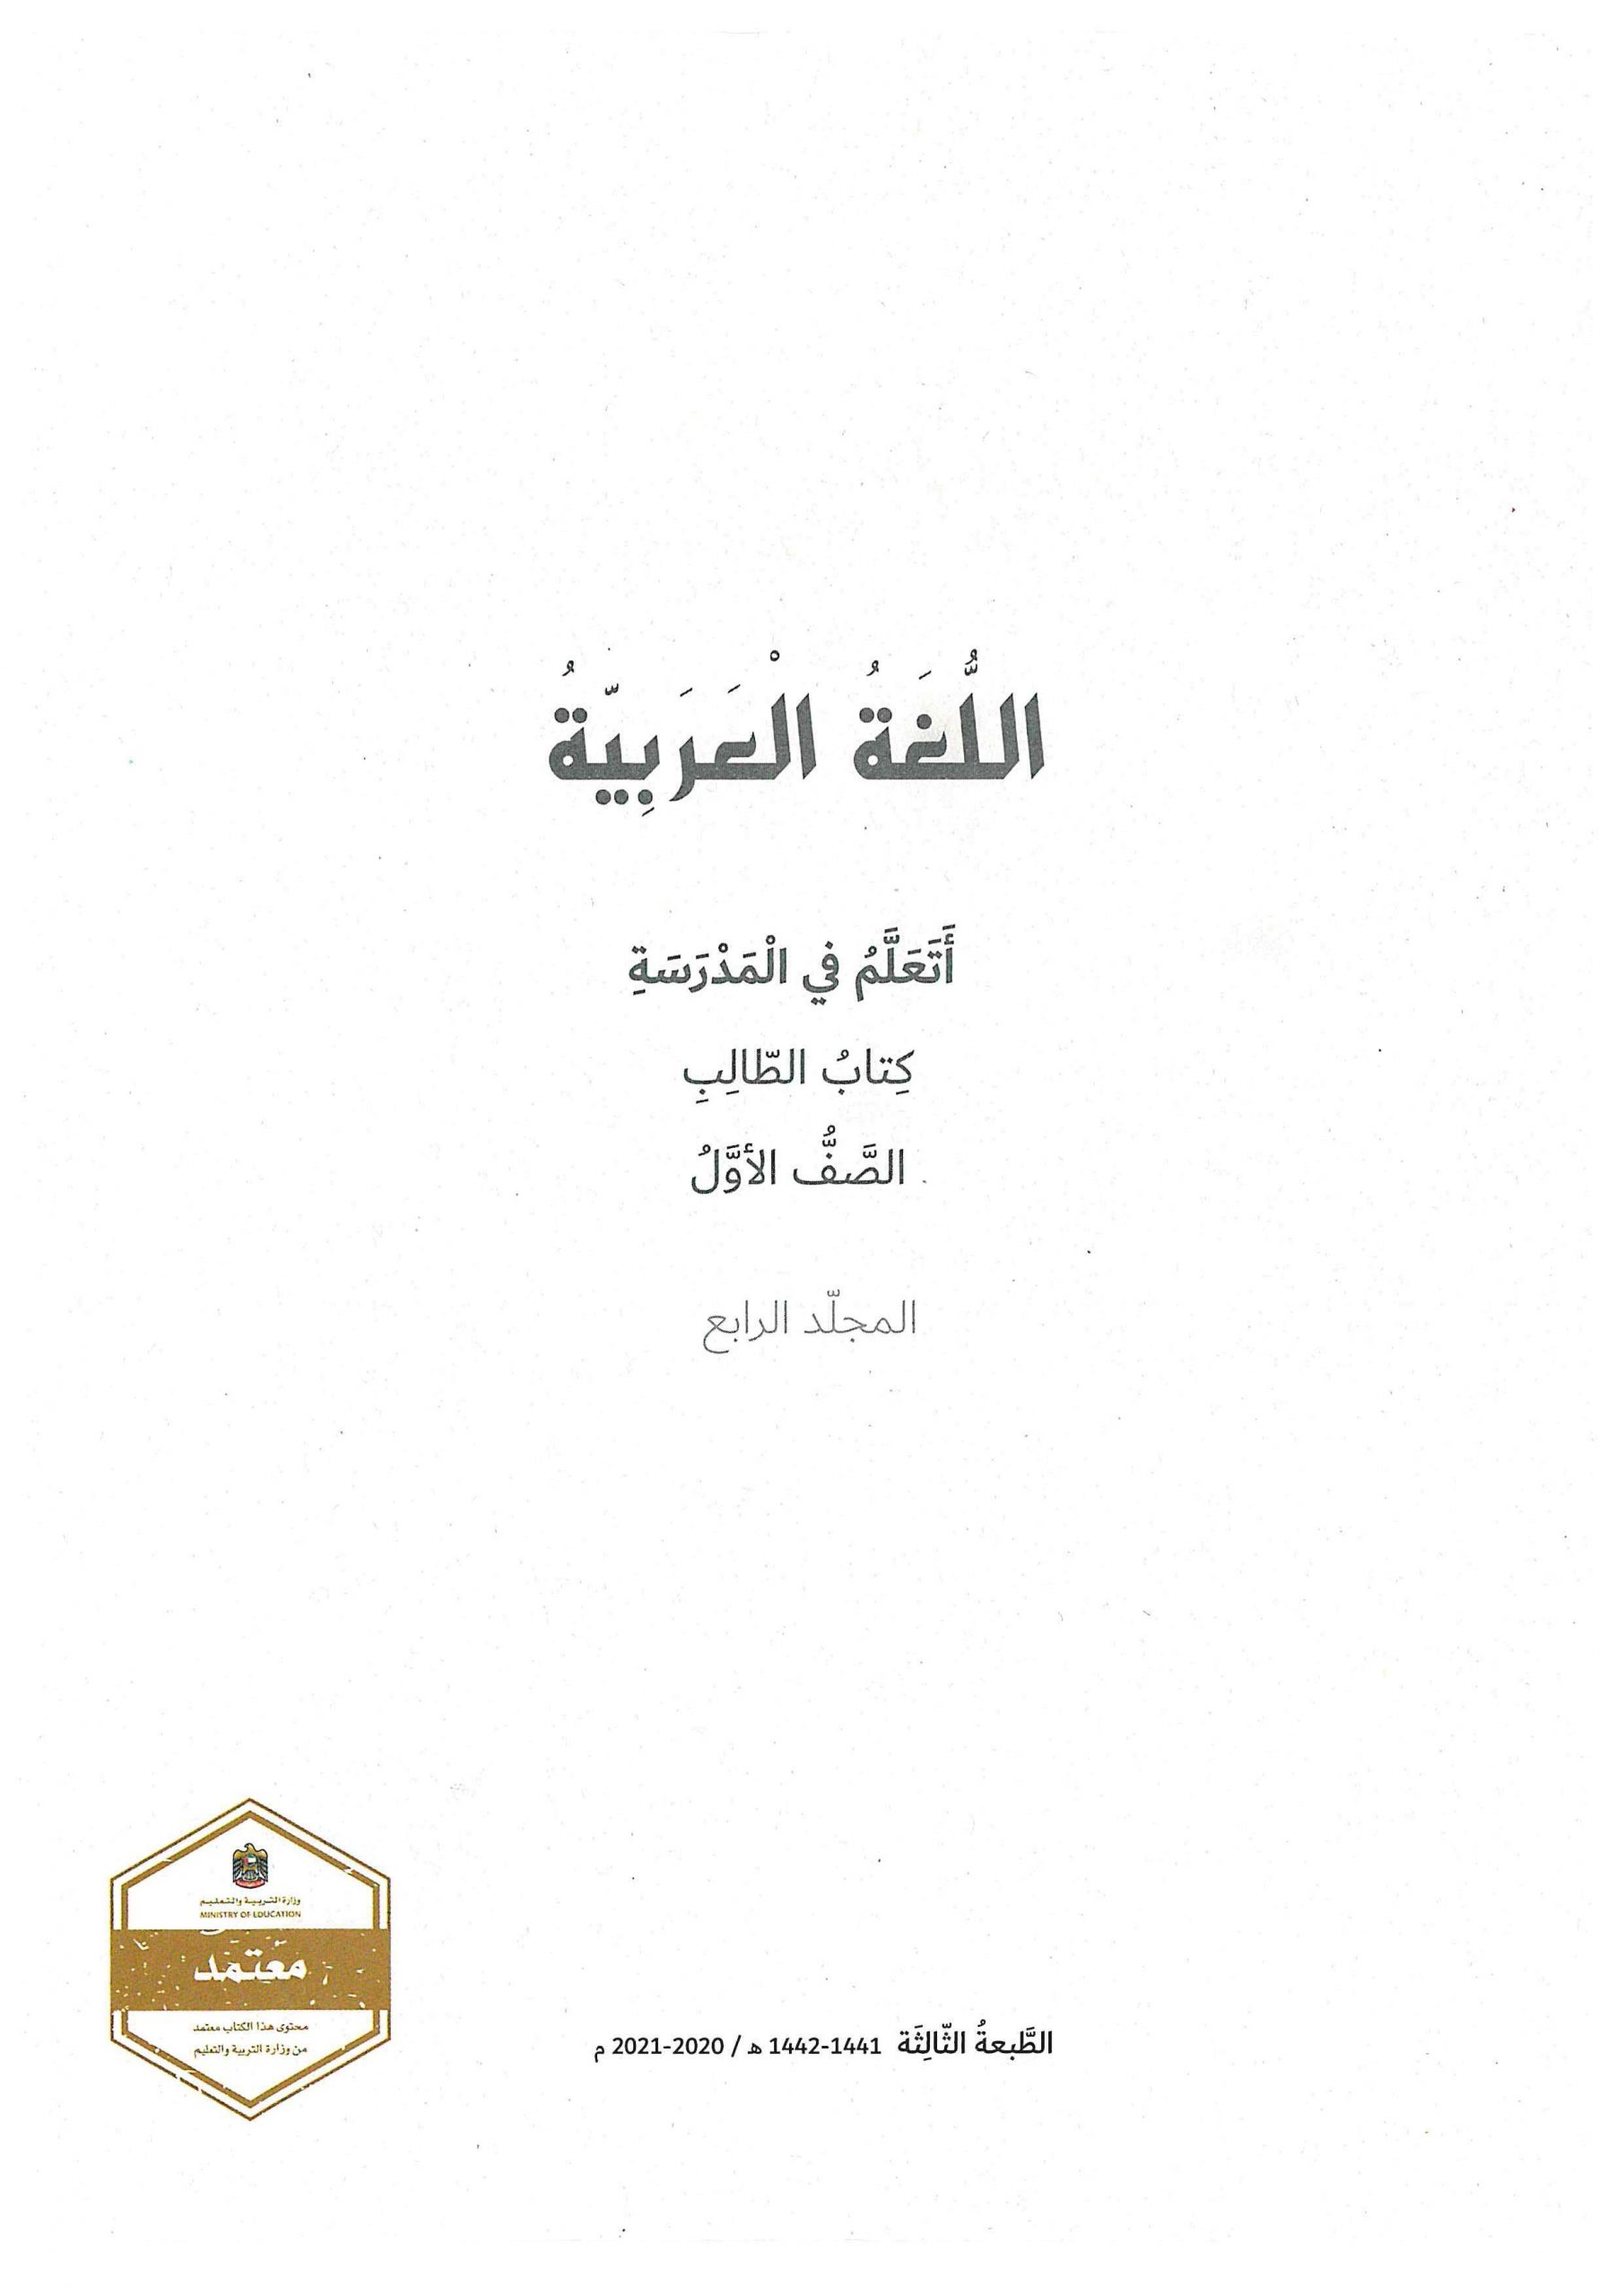 كتاب الطالب اتعلم في المدرسة الجزء الرابع الفصل الدراسي الثاني 2020-2021 الصف الاول مادة اللغة العربية 